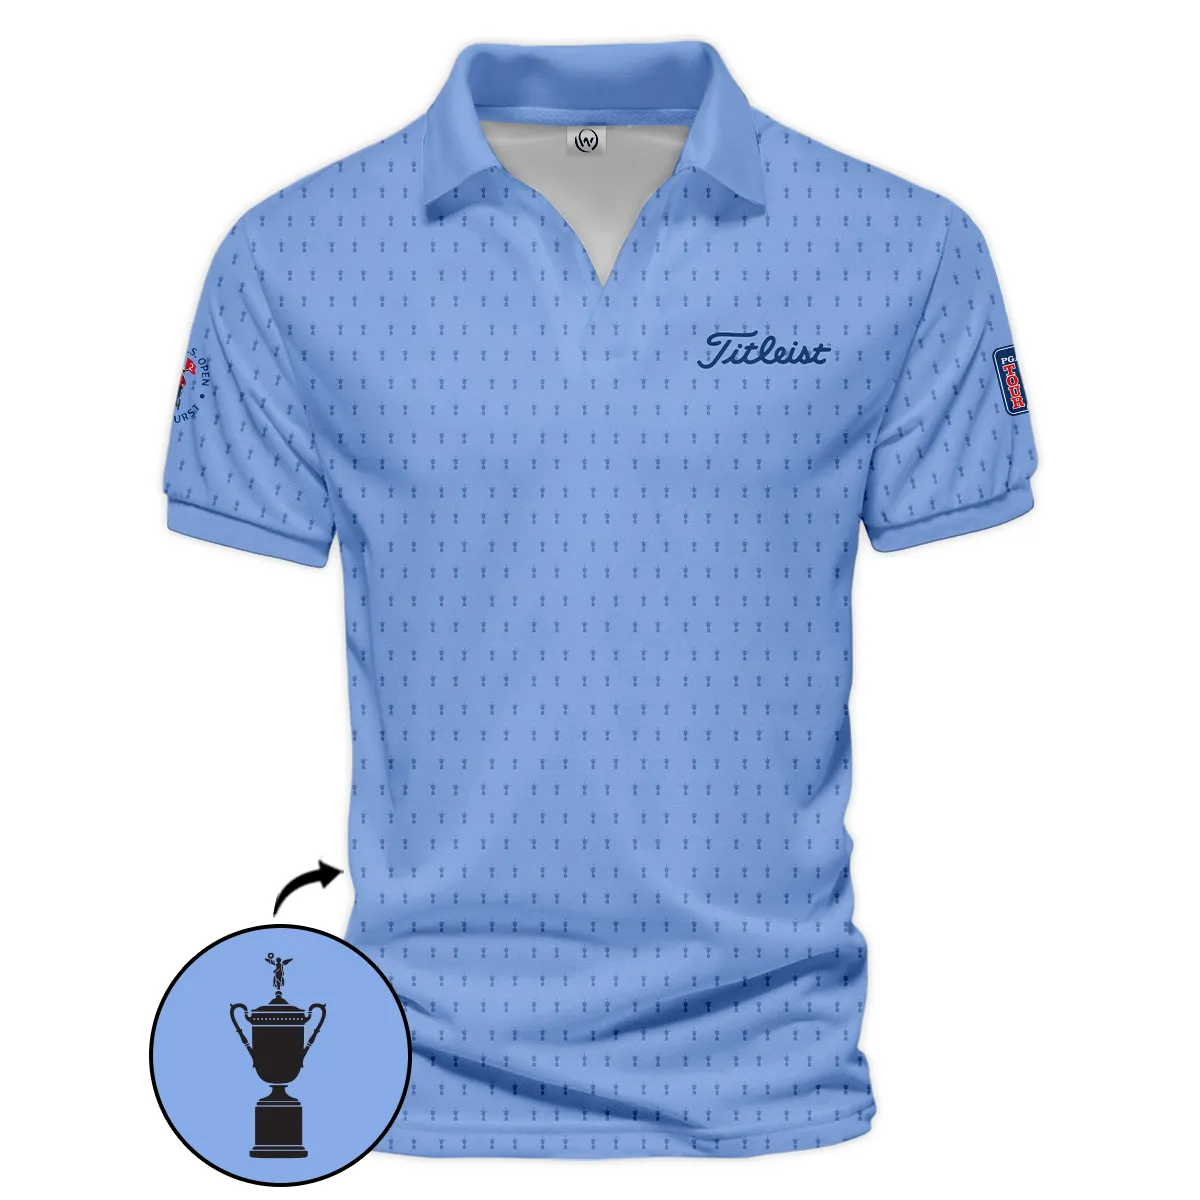 Golf Pattern Cup Blue 124th U.S. Open Pinehurst Pinehurst Titleist Zipper Hoodie Shirt Style Classic